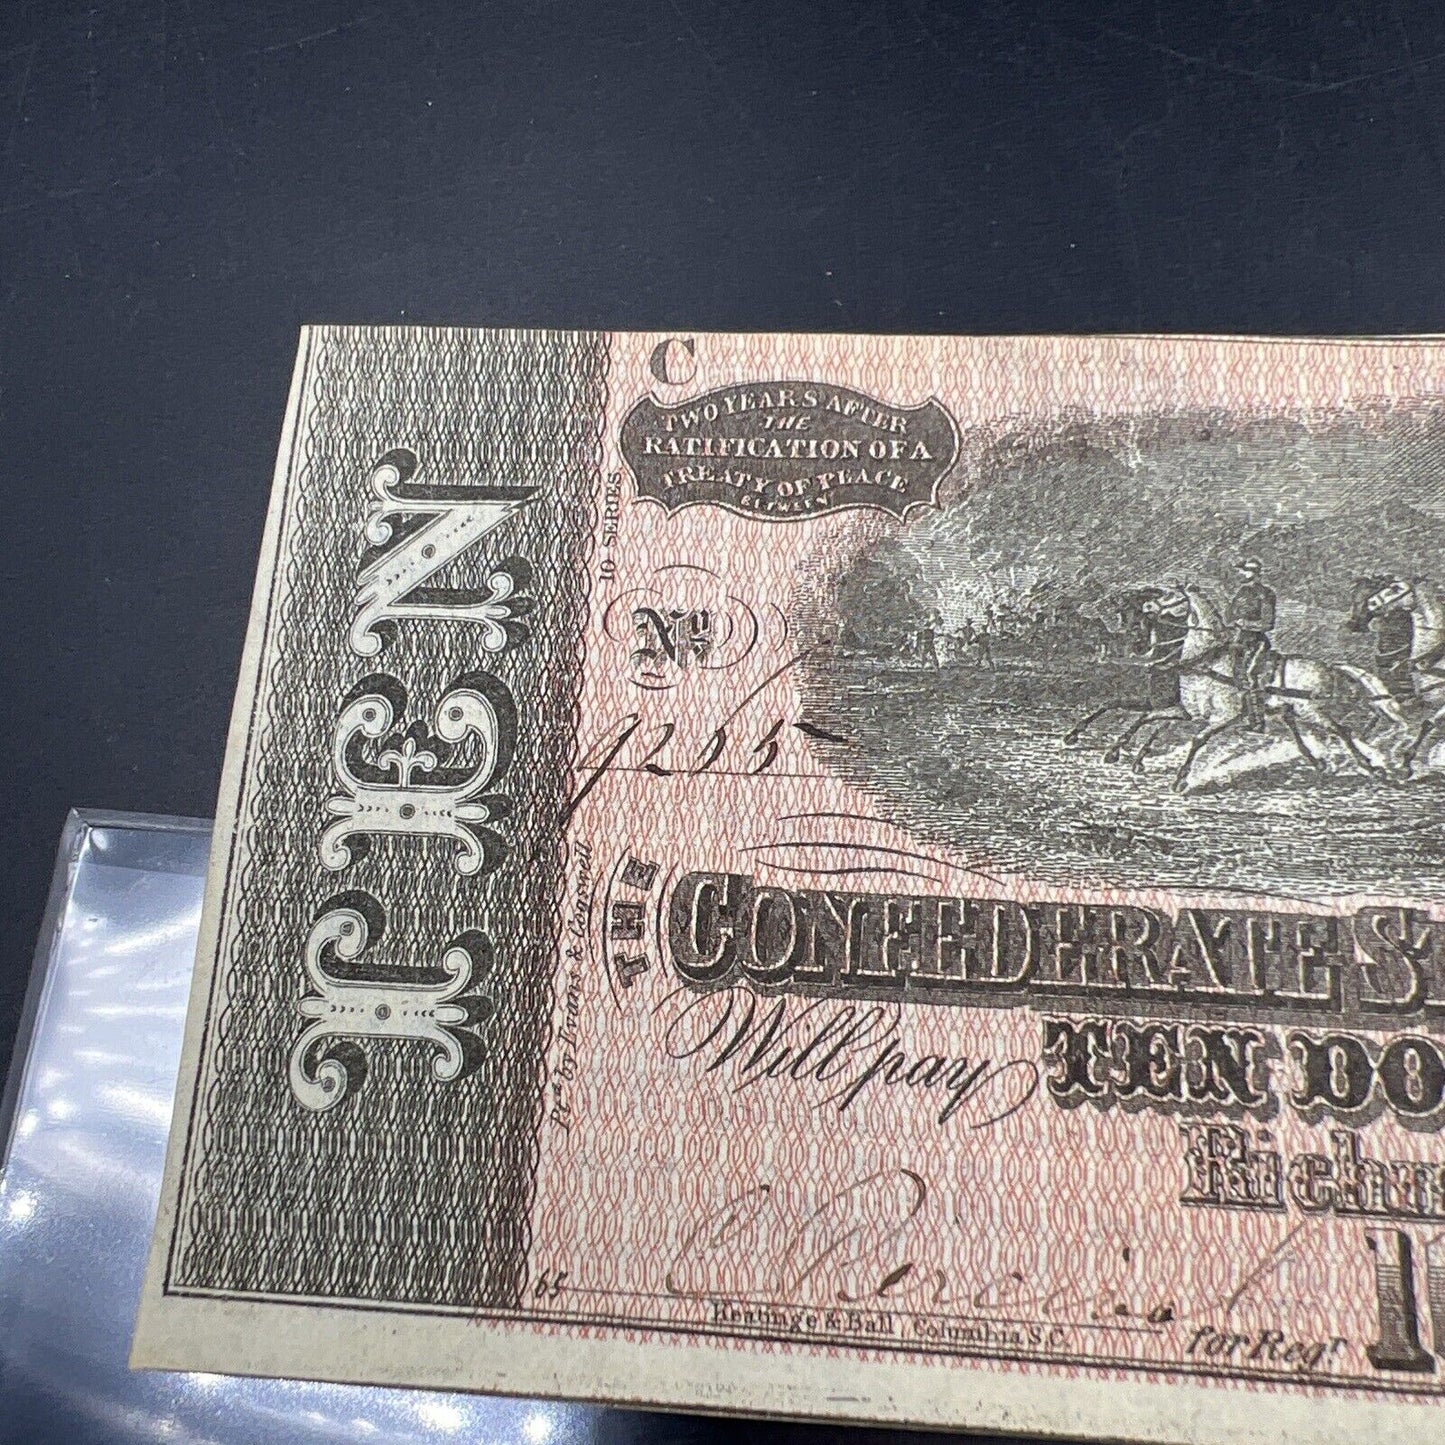 1864 Confederate States of America $10 Bill US Civil War Note AU About UNC